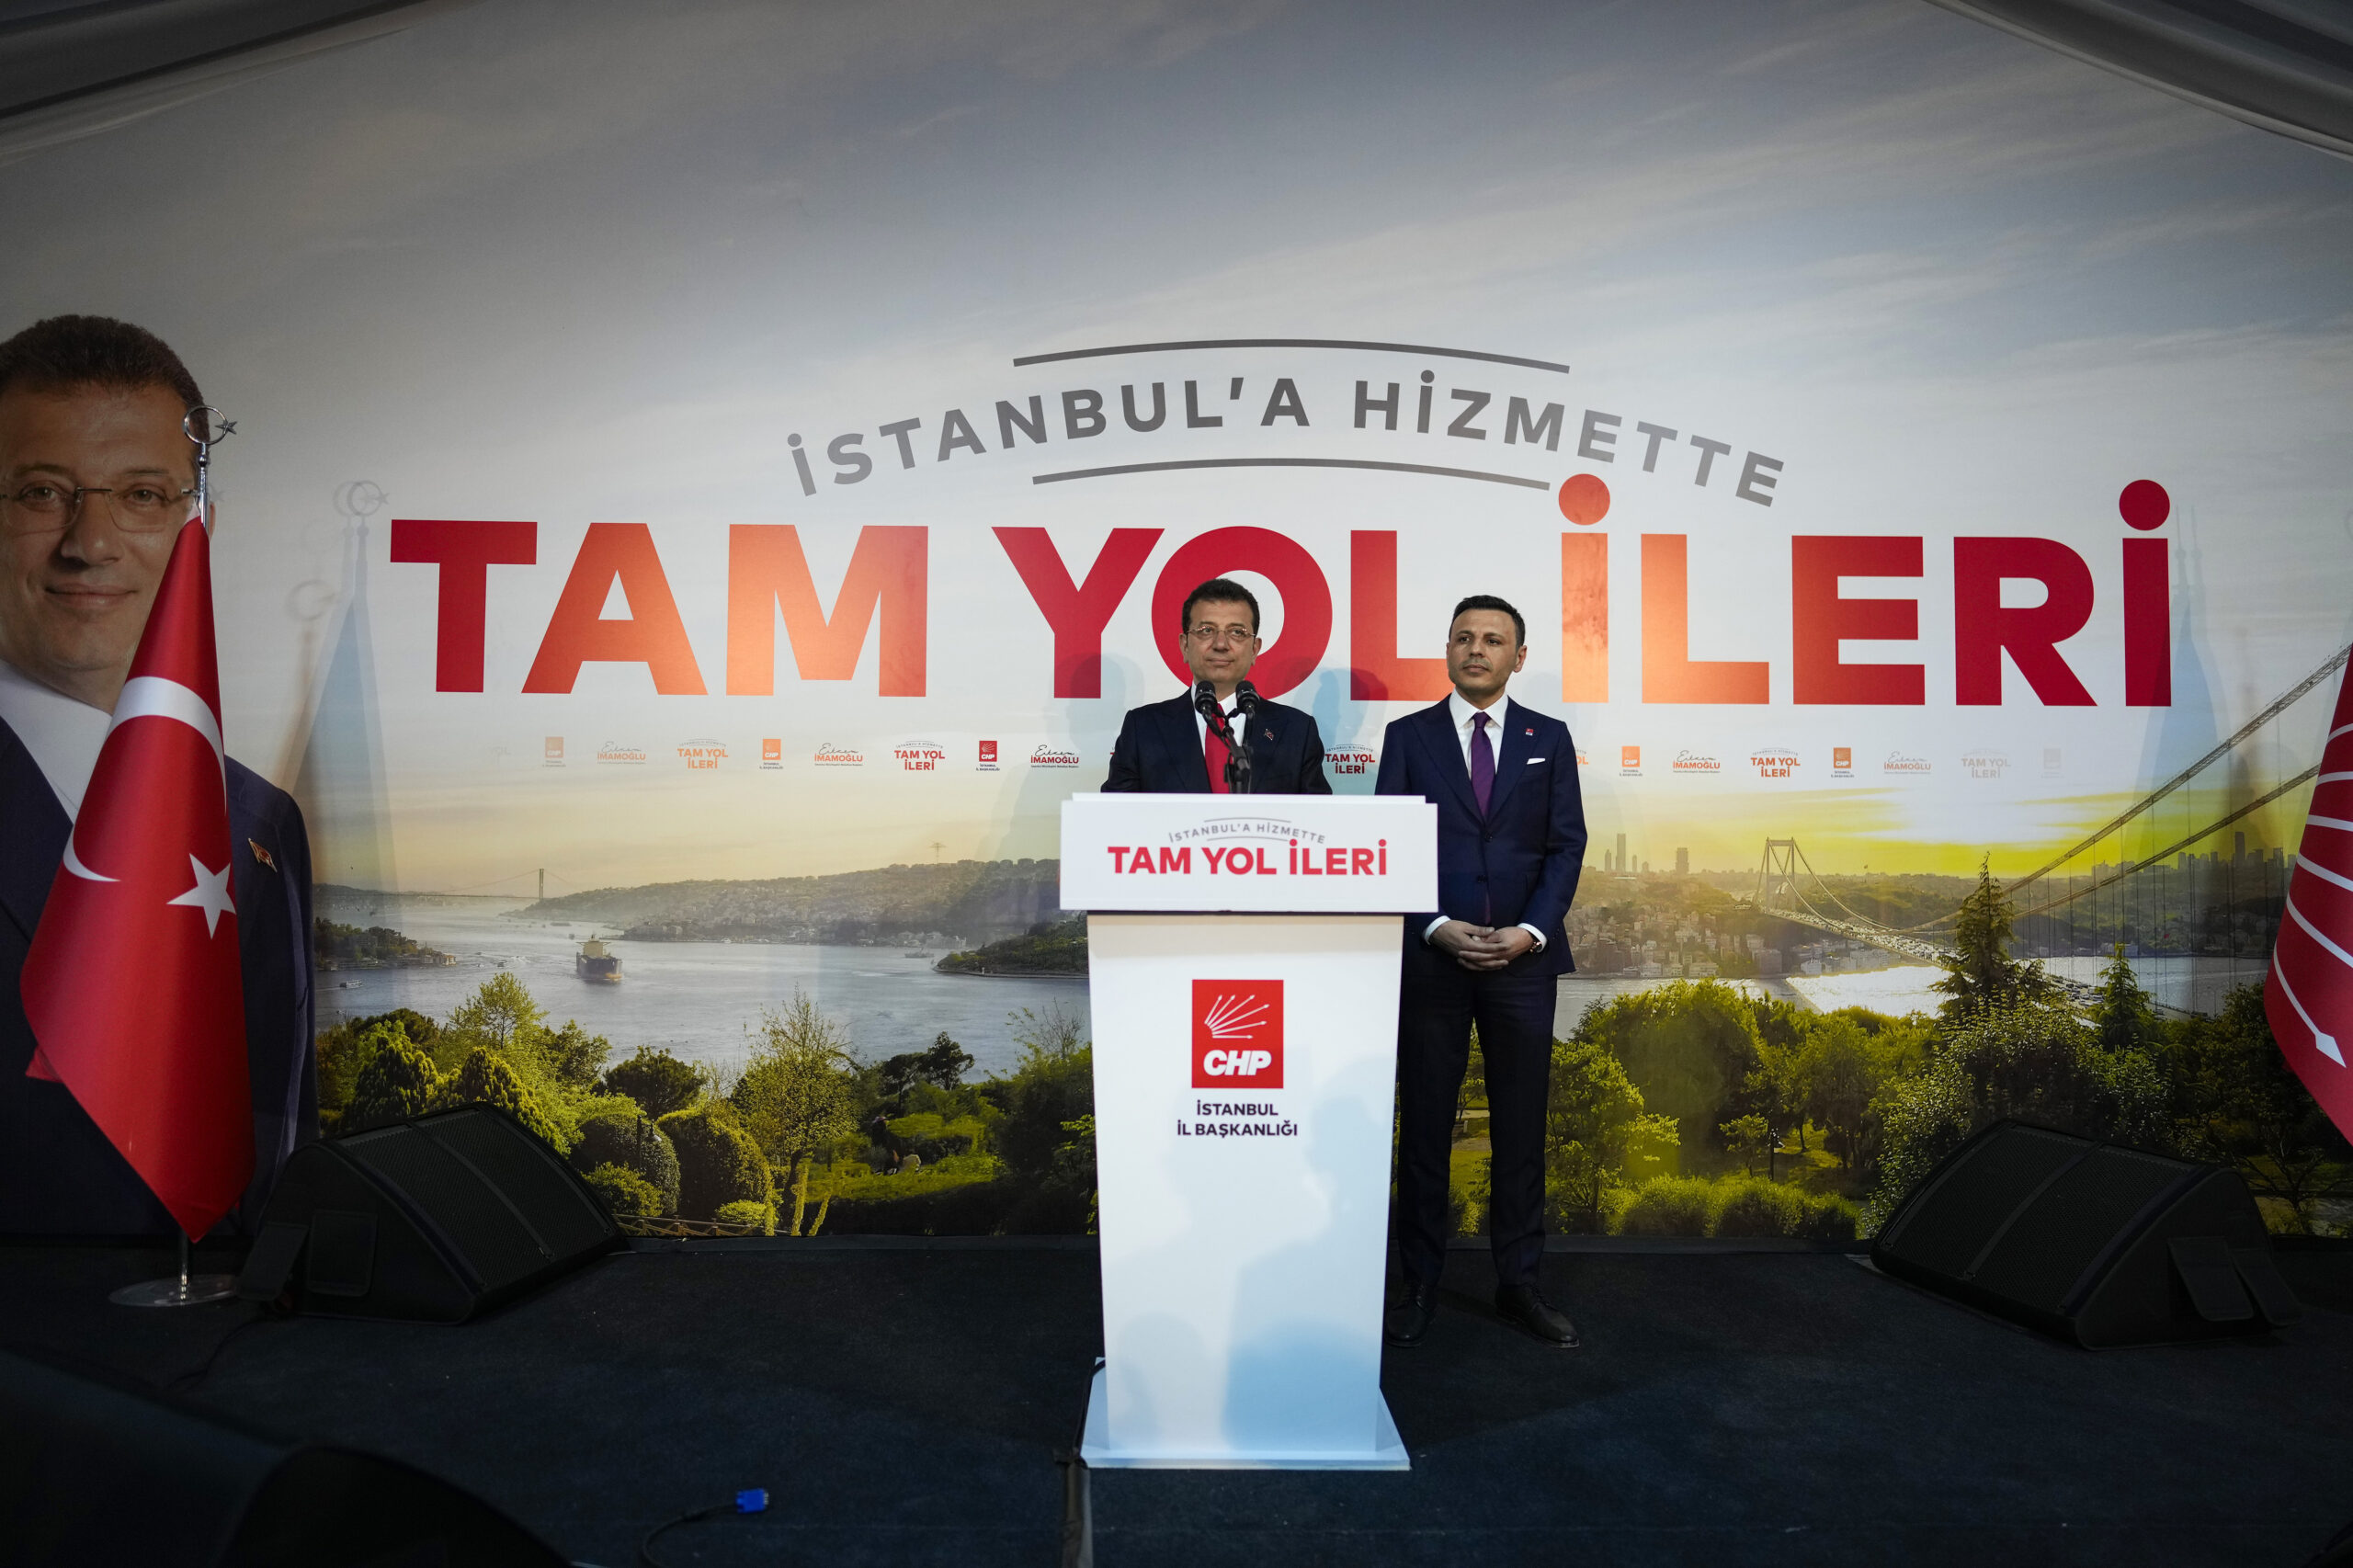 Δημοτικές εκλογές στην Τουρκία – Ειδικοί στο ΕΡΤNews: Ίσως κέρδιζαν τον Ερντογάν στις προεδρικές Ιμάμογλου ή Γιαβάς, αν ήταν υποψήφιοι